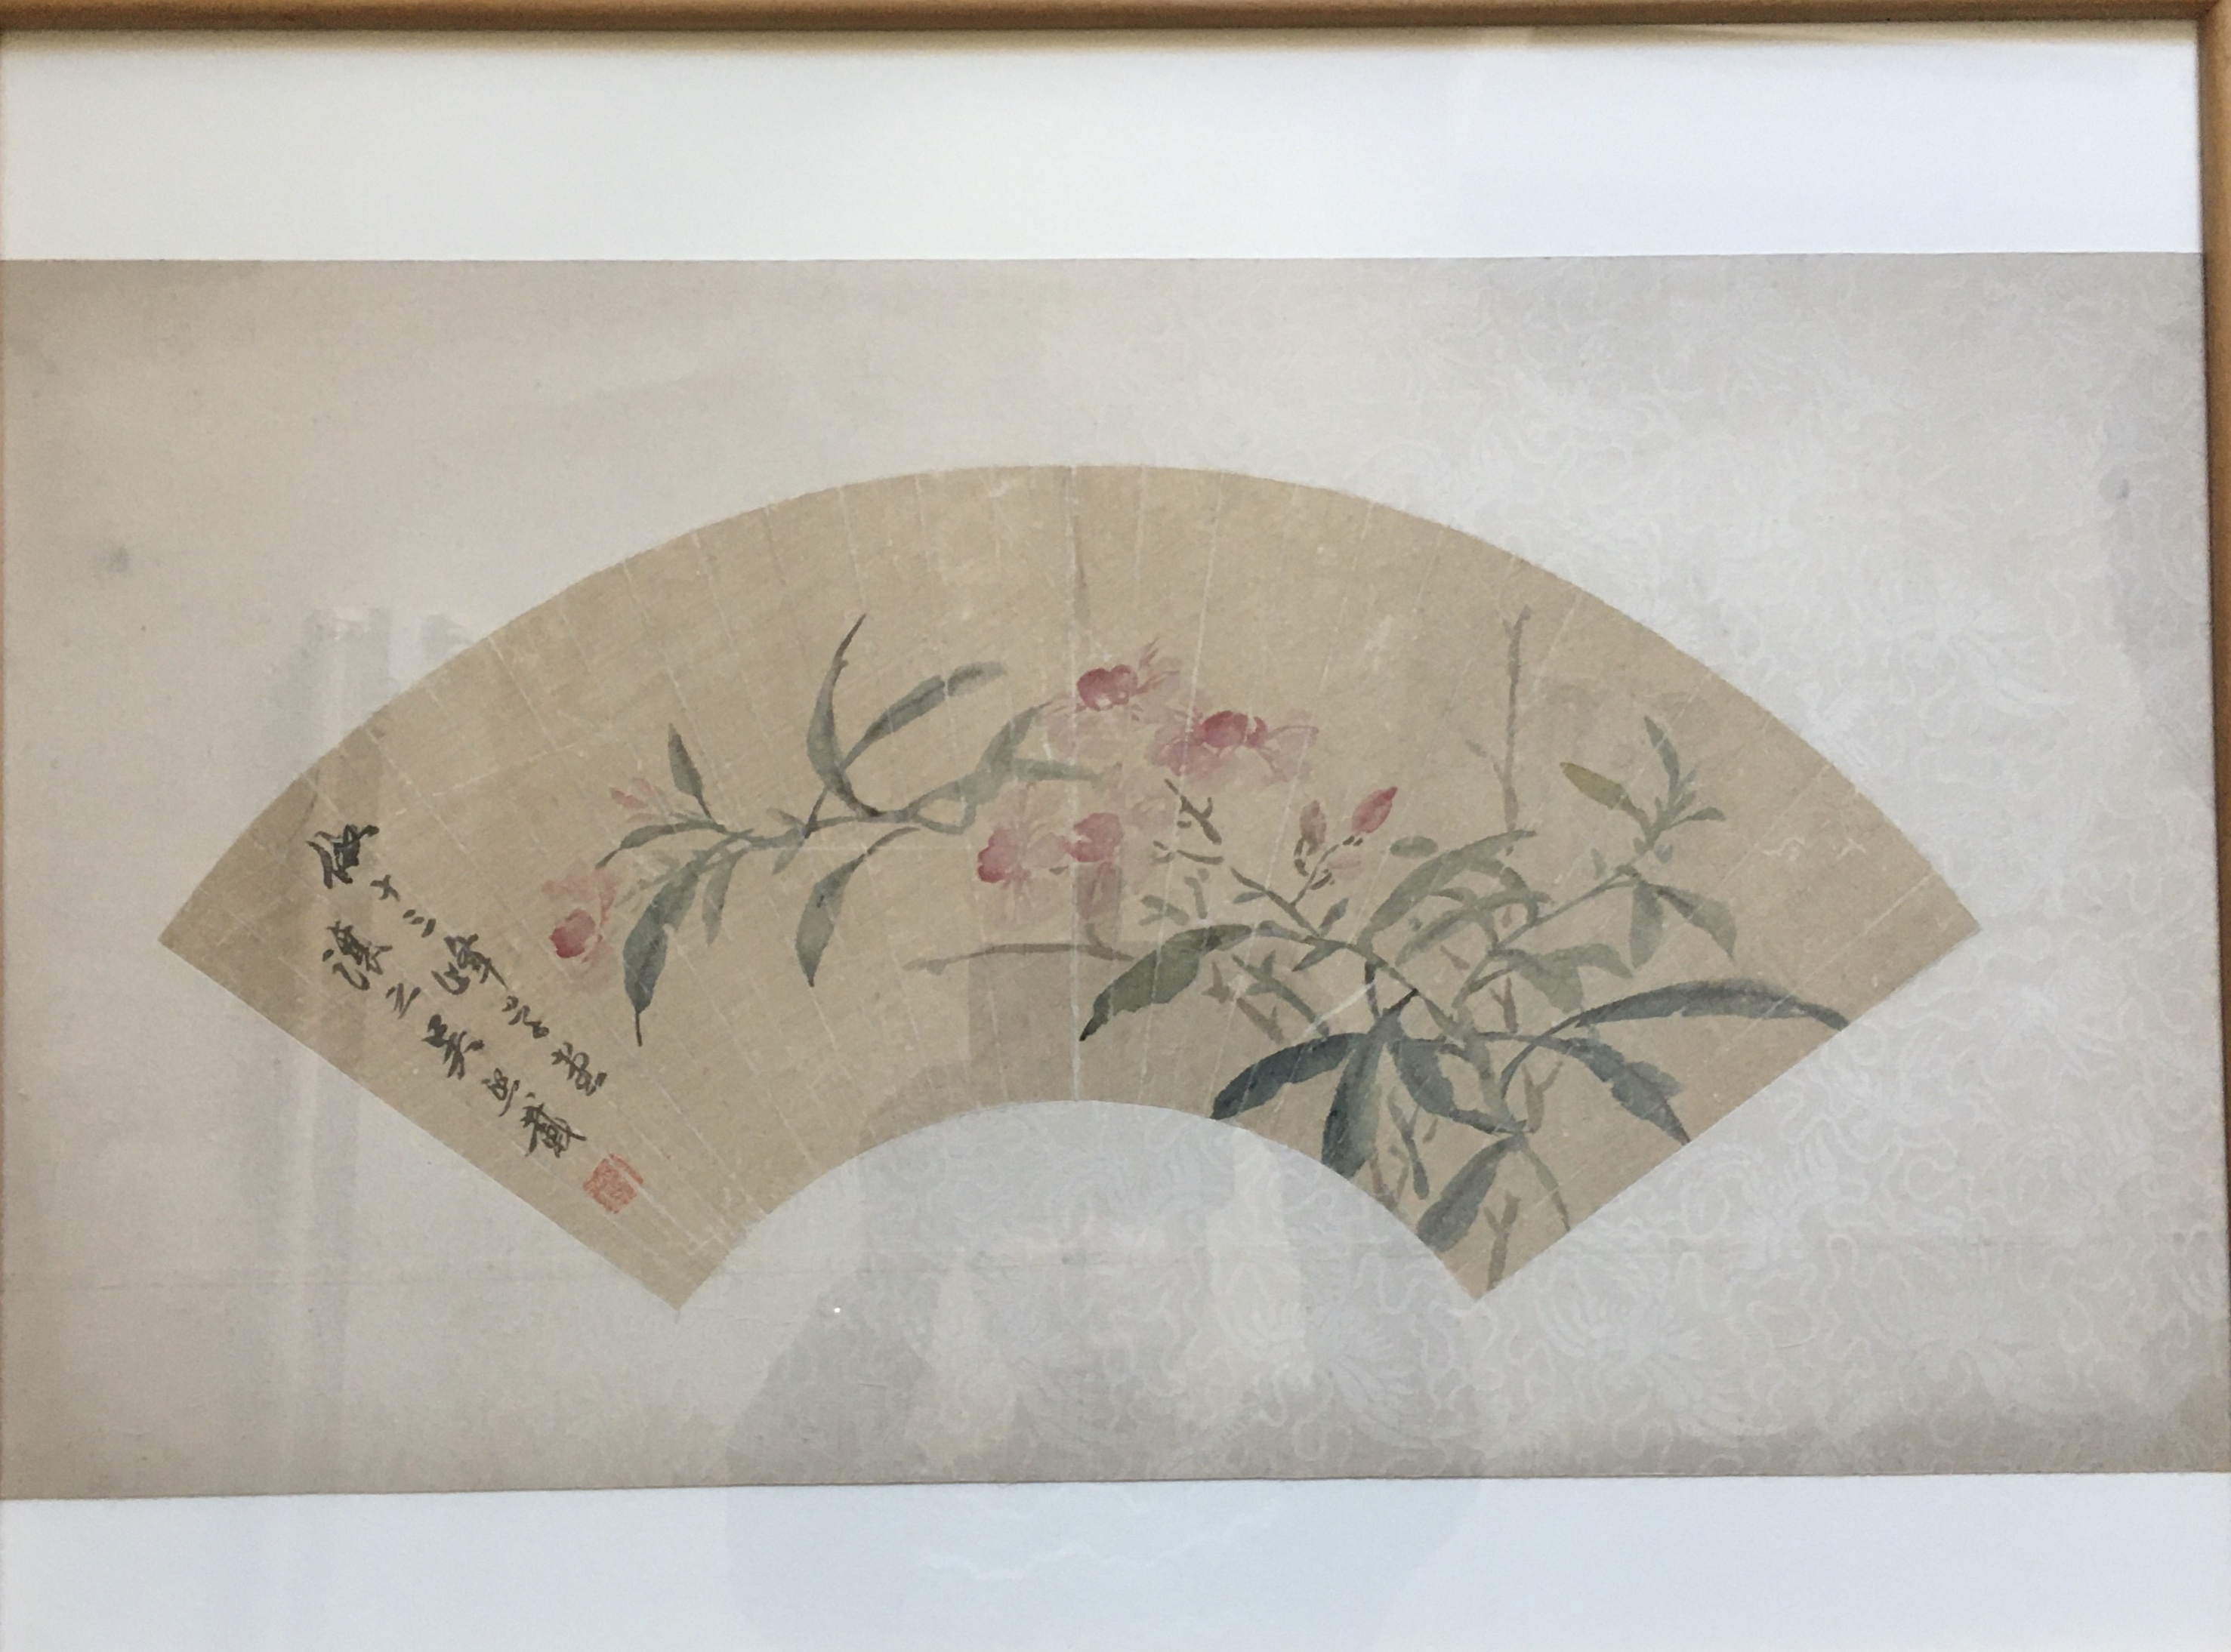 【保証書付】扇面日本画 画像江文人 「七面鳥之図」 花鳥、鳥獣